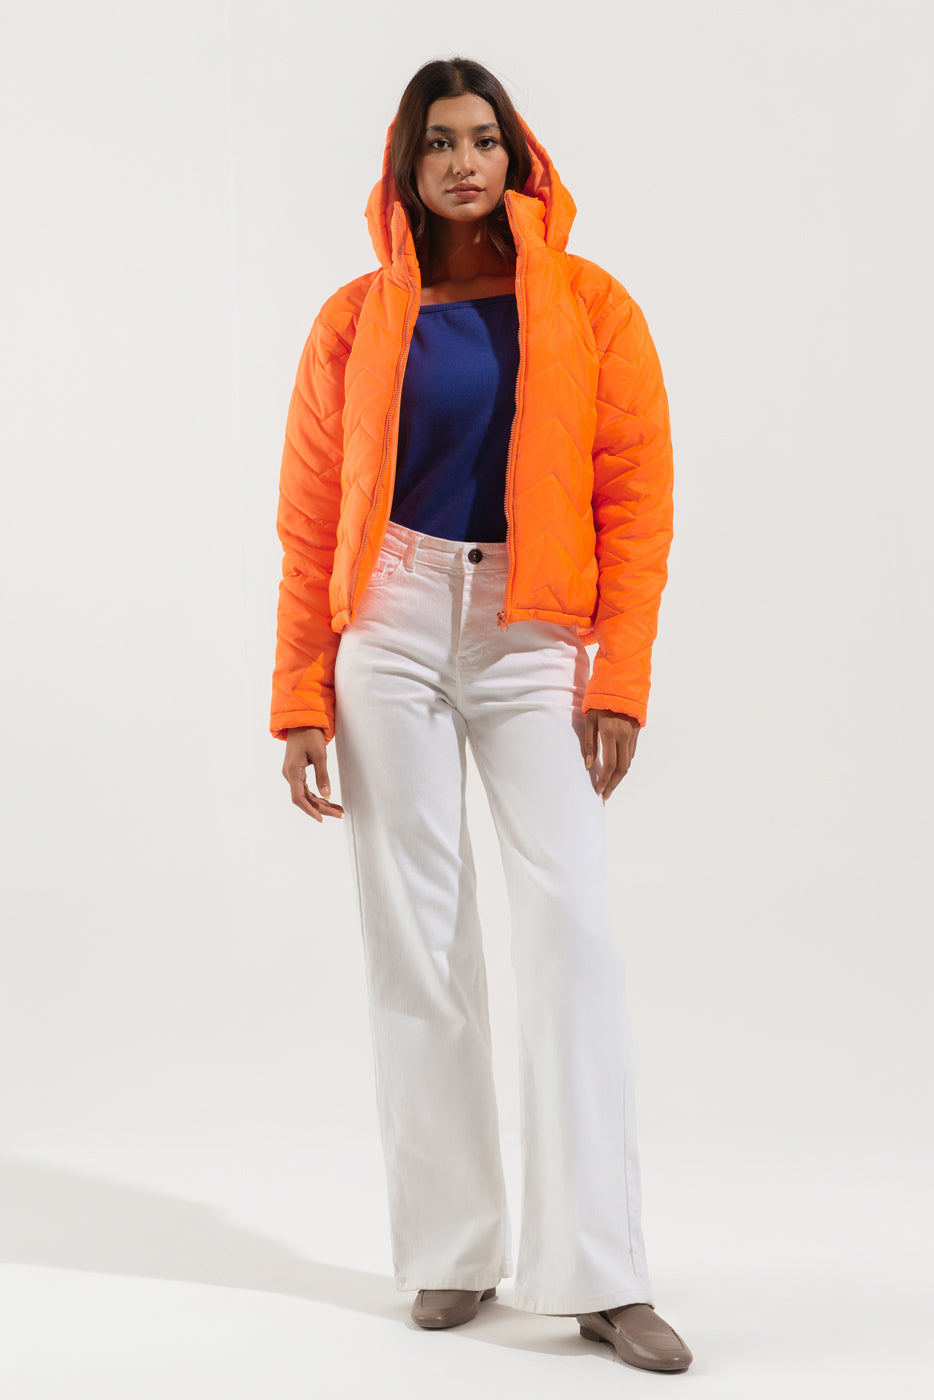 Vibrant Orange Jacket